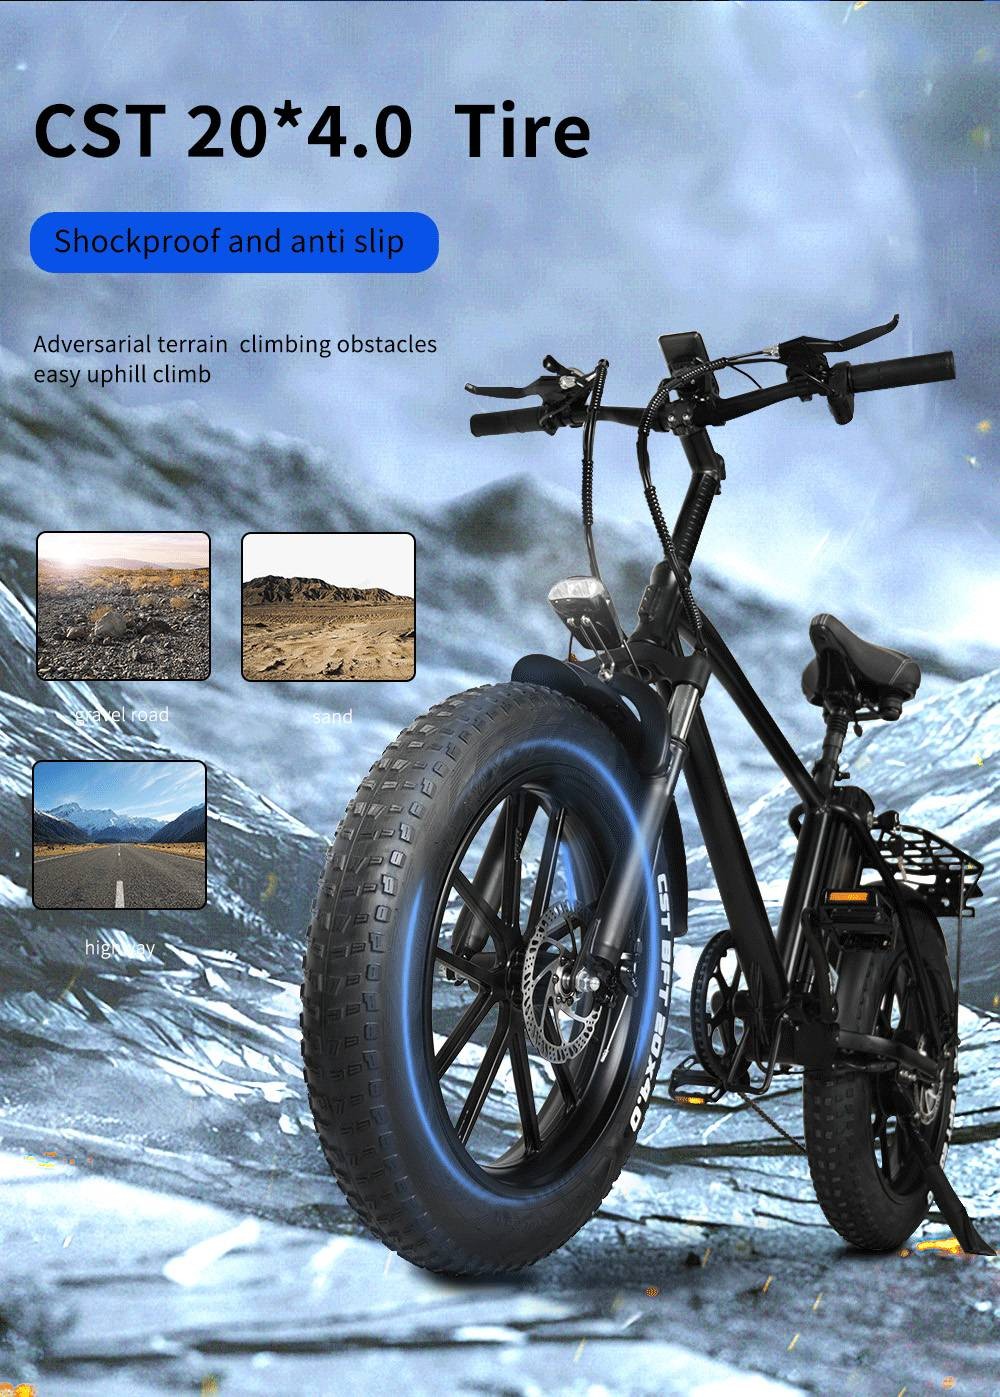 CMACEWHEEL T20 elektromos kerékpár 20*4.0 hüvelykes CST gumiabroncs 750W motor 40-45km/h maximális sebesség 17Ah akkumulátor - szürke fekete színátmenet